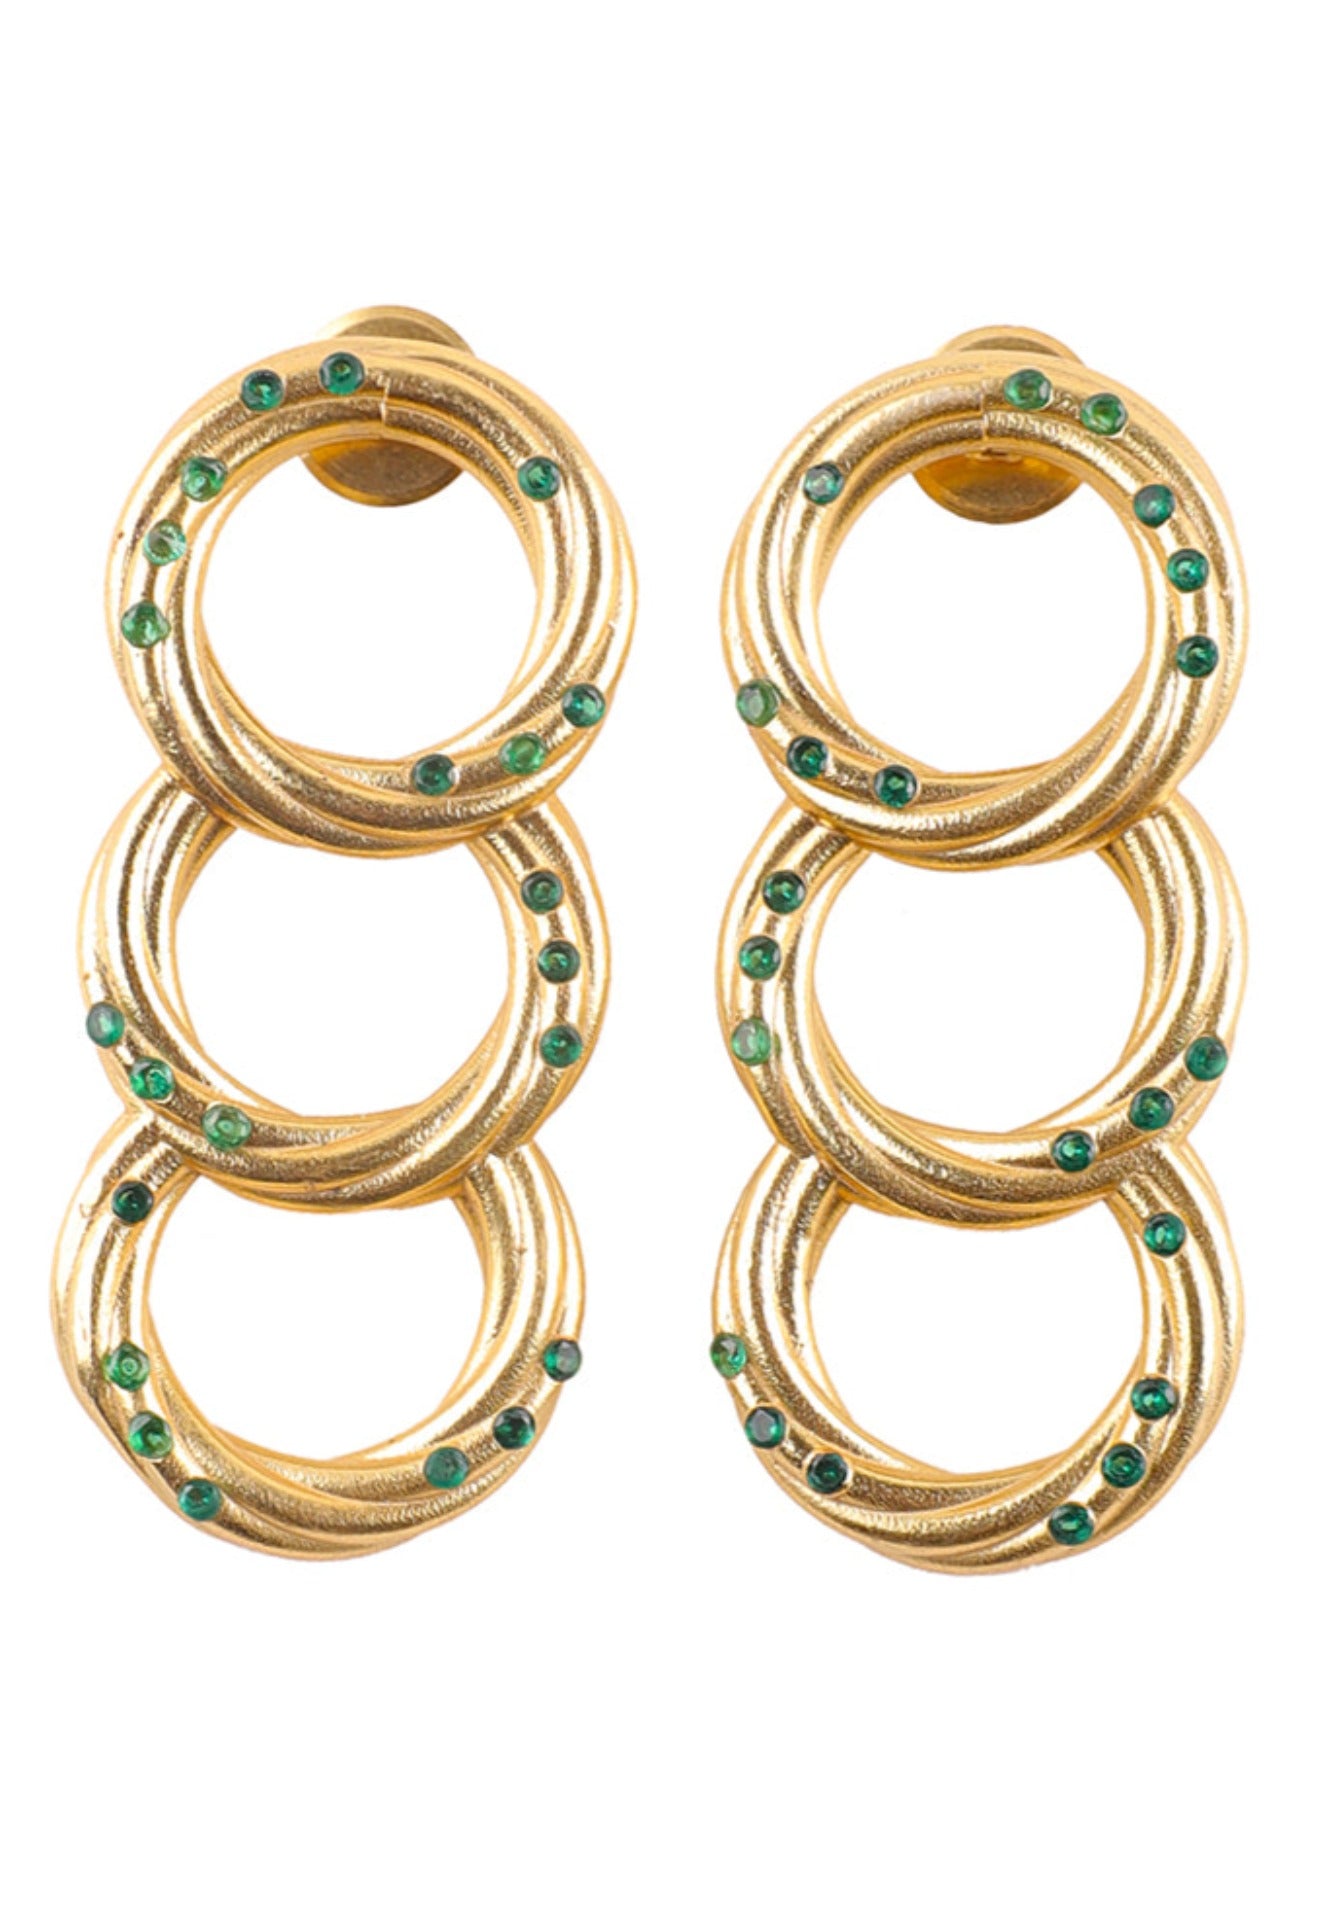 The Emerald Swirl Earrings